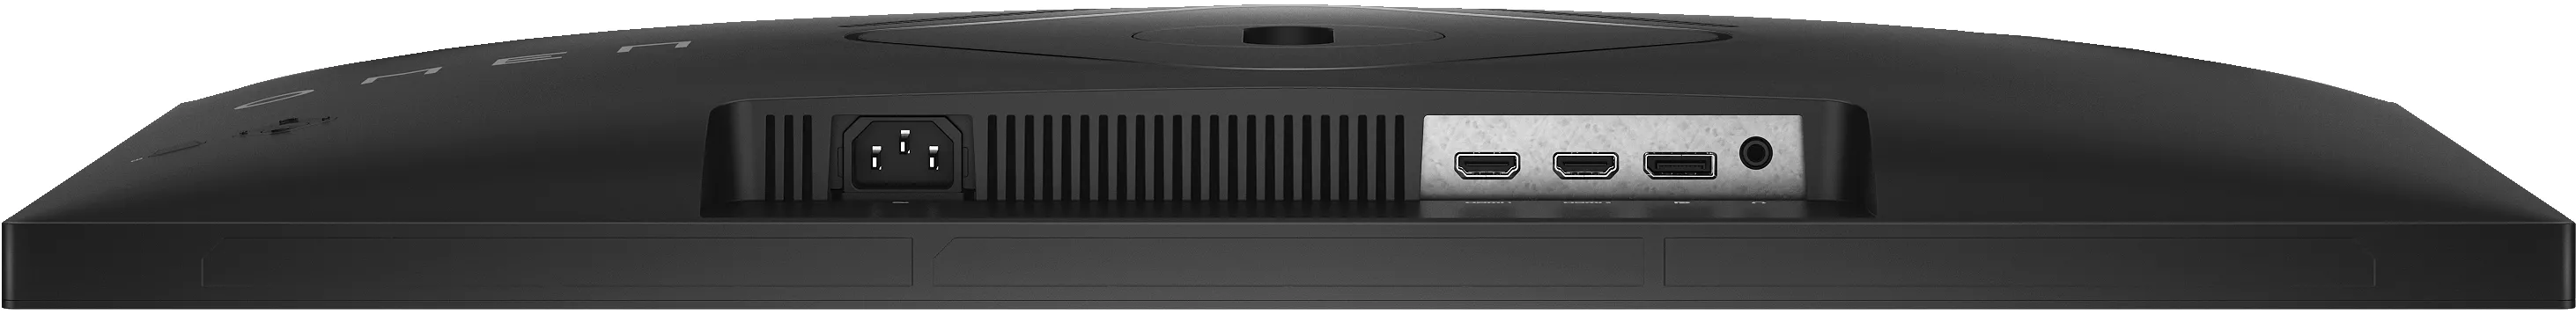 HP OMEN 27p FHD 165Hz Gaming Monitor HP - visuel 1 - hello RSE - Résolution FHD